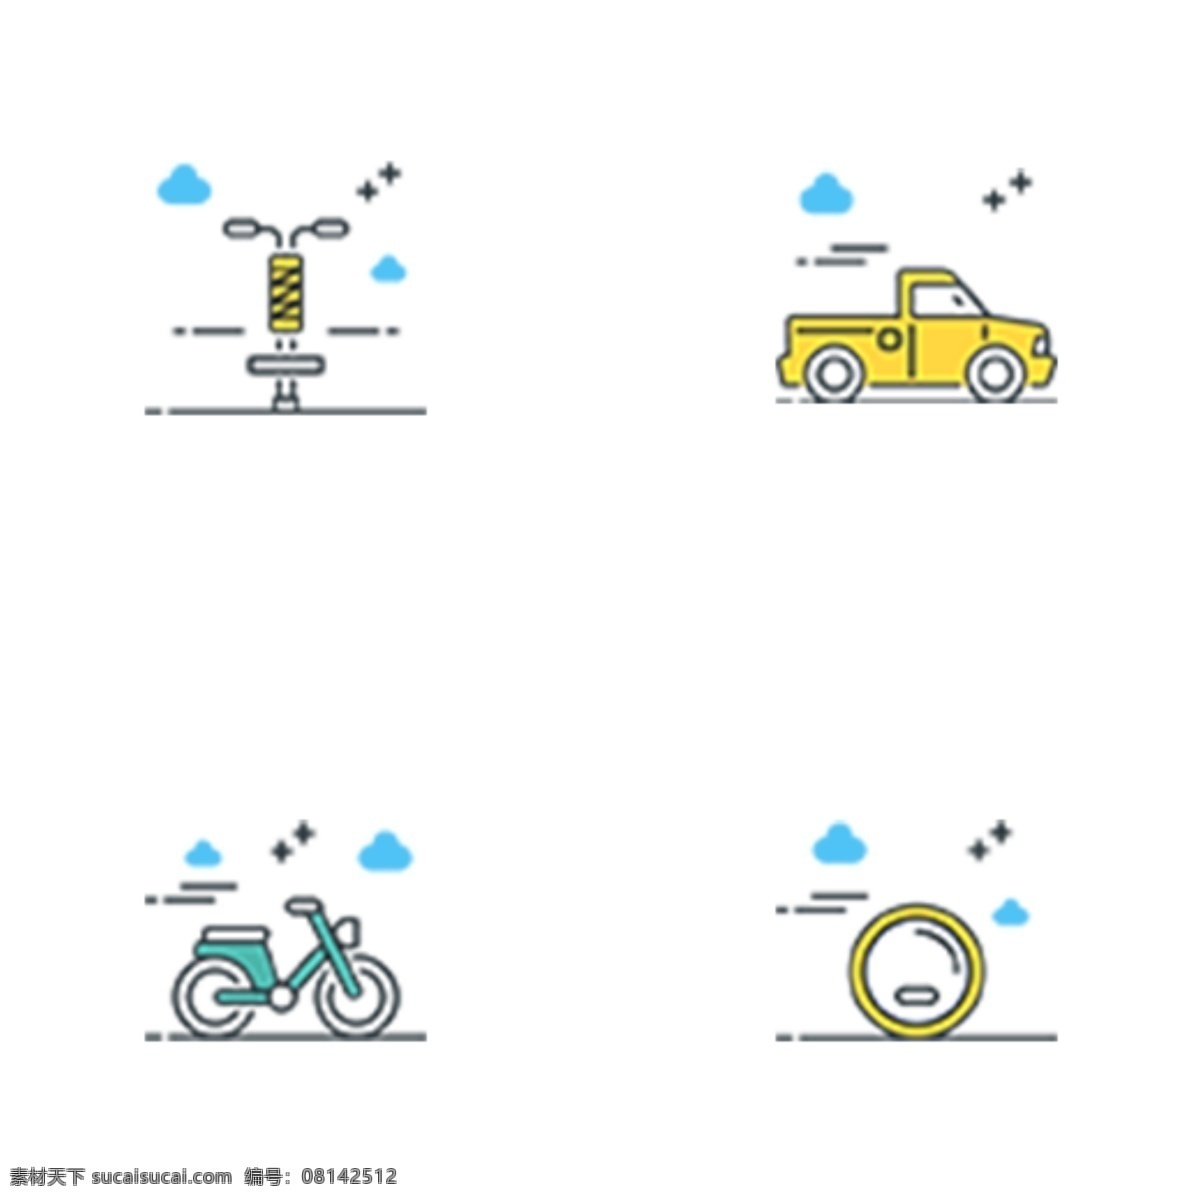 彩色 创意 交通工具 图标 元素 交通 工具 自行车 汽车 出行 运输 轮子 卡通插画 ui 扁平化